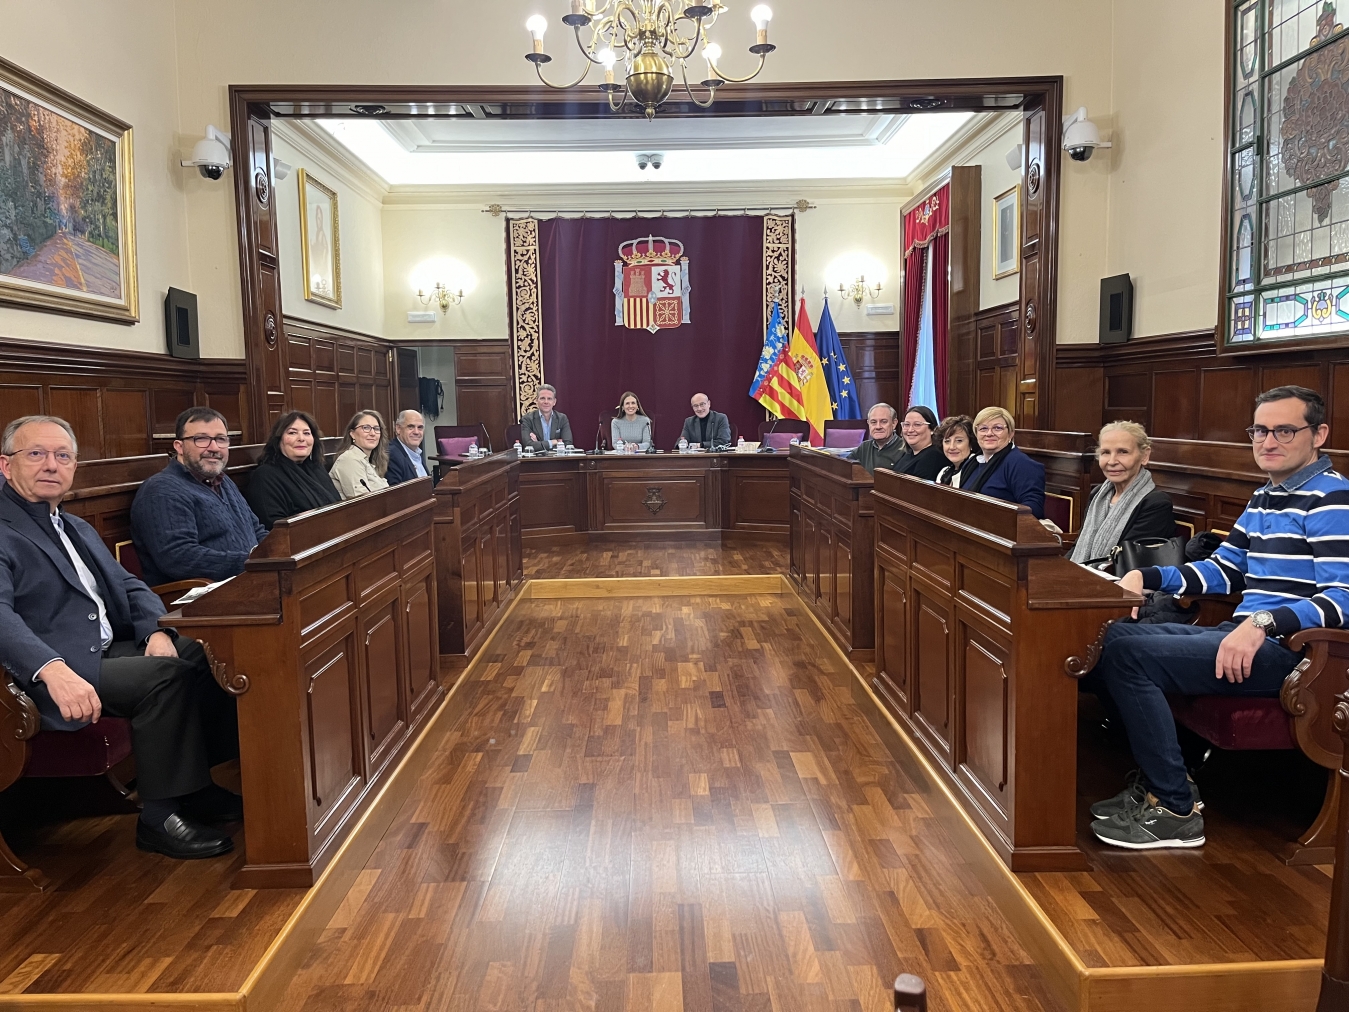 La Diputación incorpora la participación de la ciudadanía para seguir avanzando en sus políticas públicas